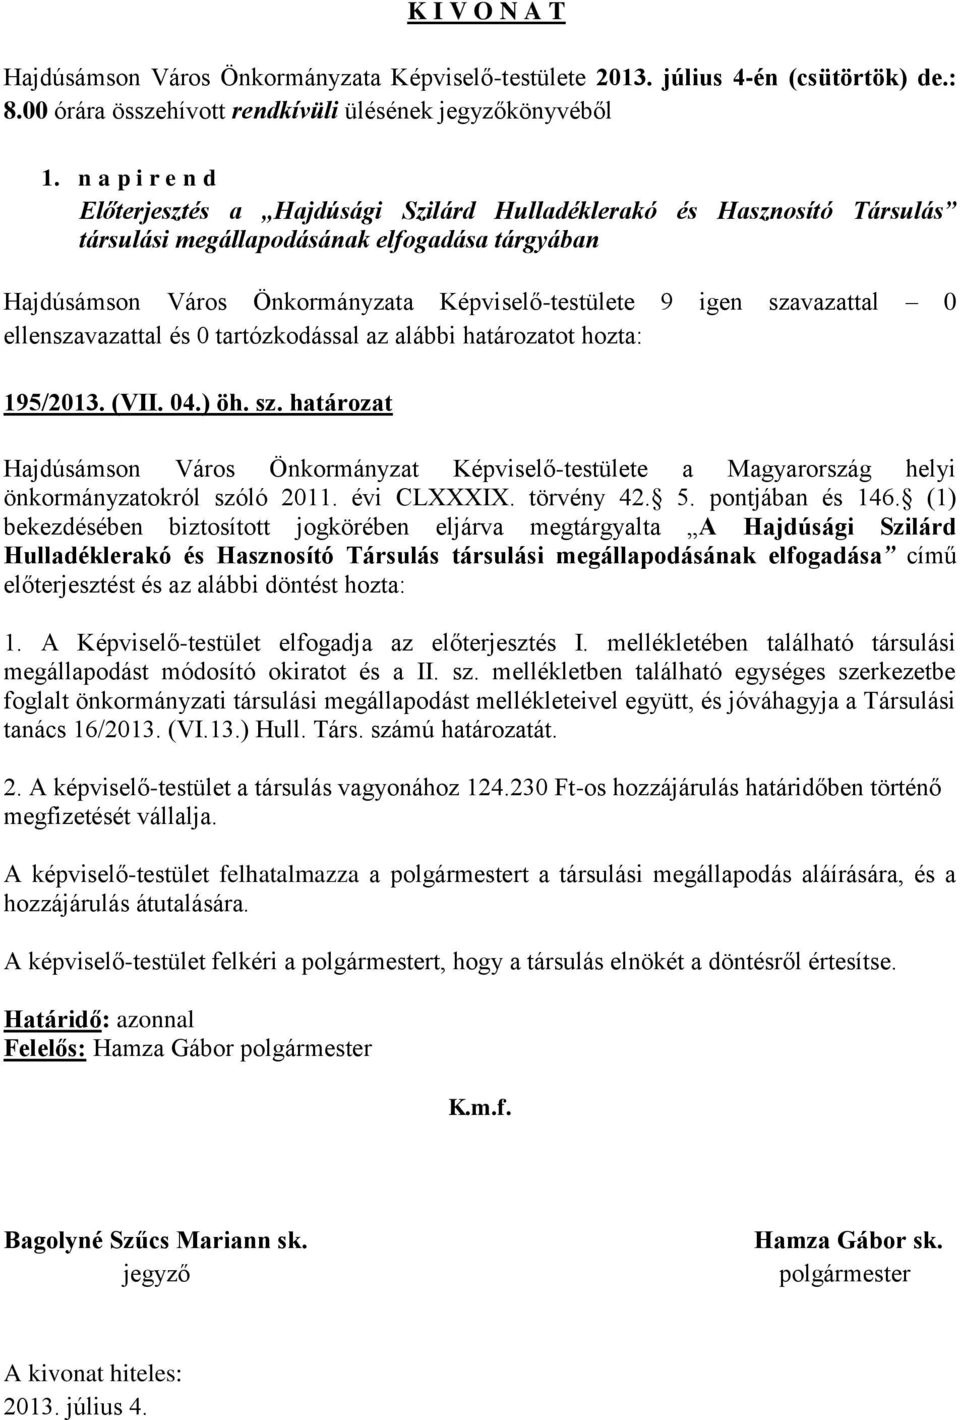 határozat Hajdúsámson Város Önkormányzat Képviselő-testülete a Magyarország helyi önkormányzatokról szóló 2011. évi CLXXXIX. törvény 42. 5. pontjában és 146.